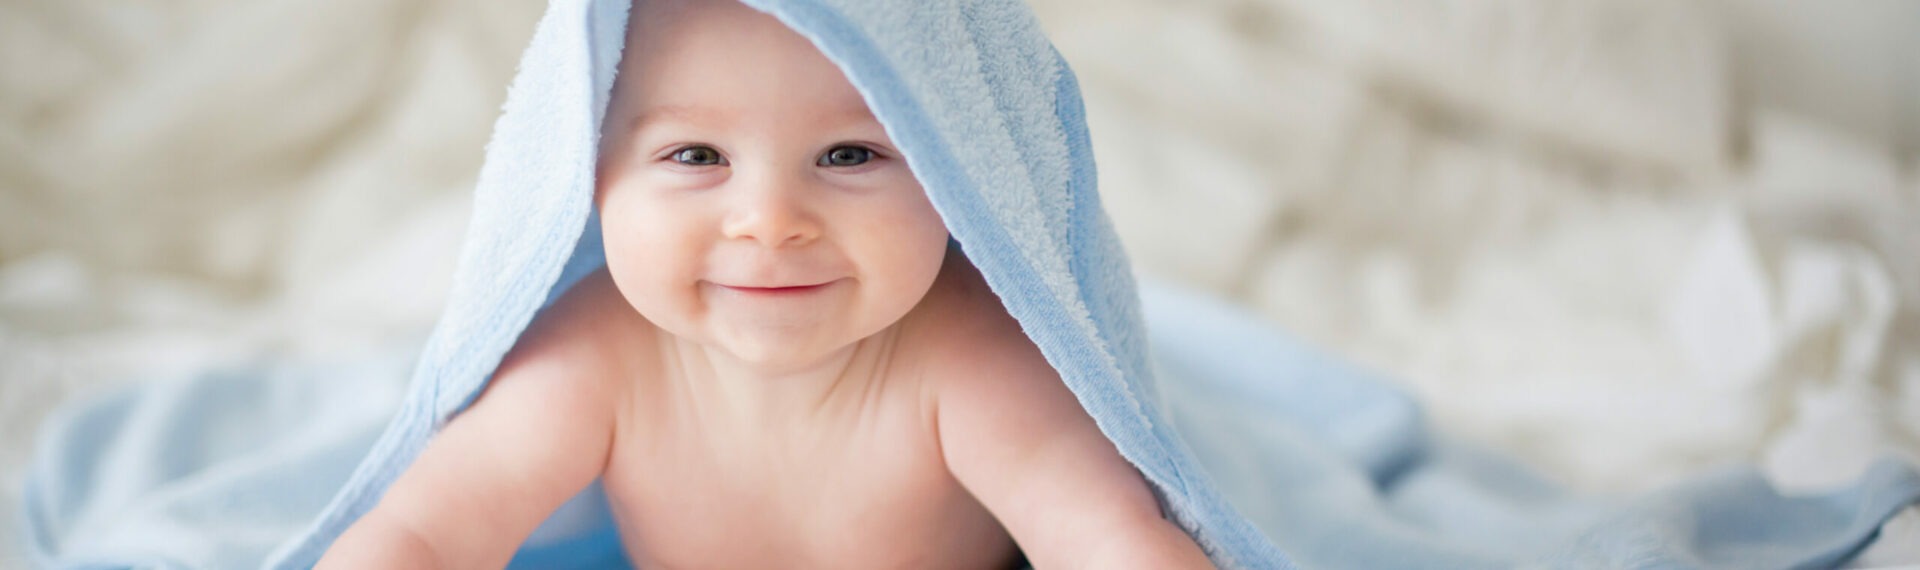 babysoft baby moodbild edeka baby das lächelt